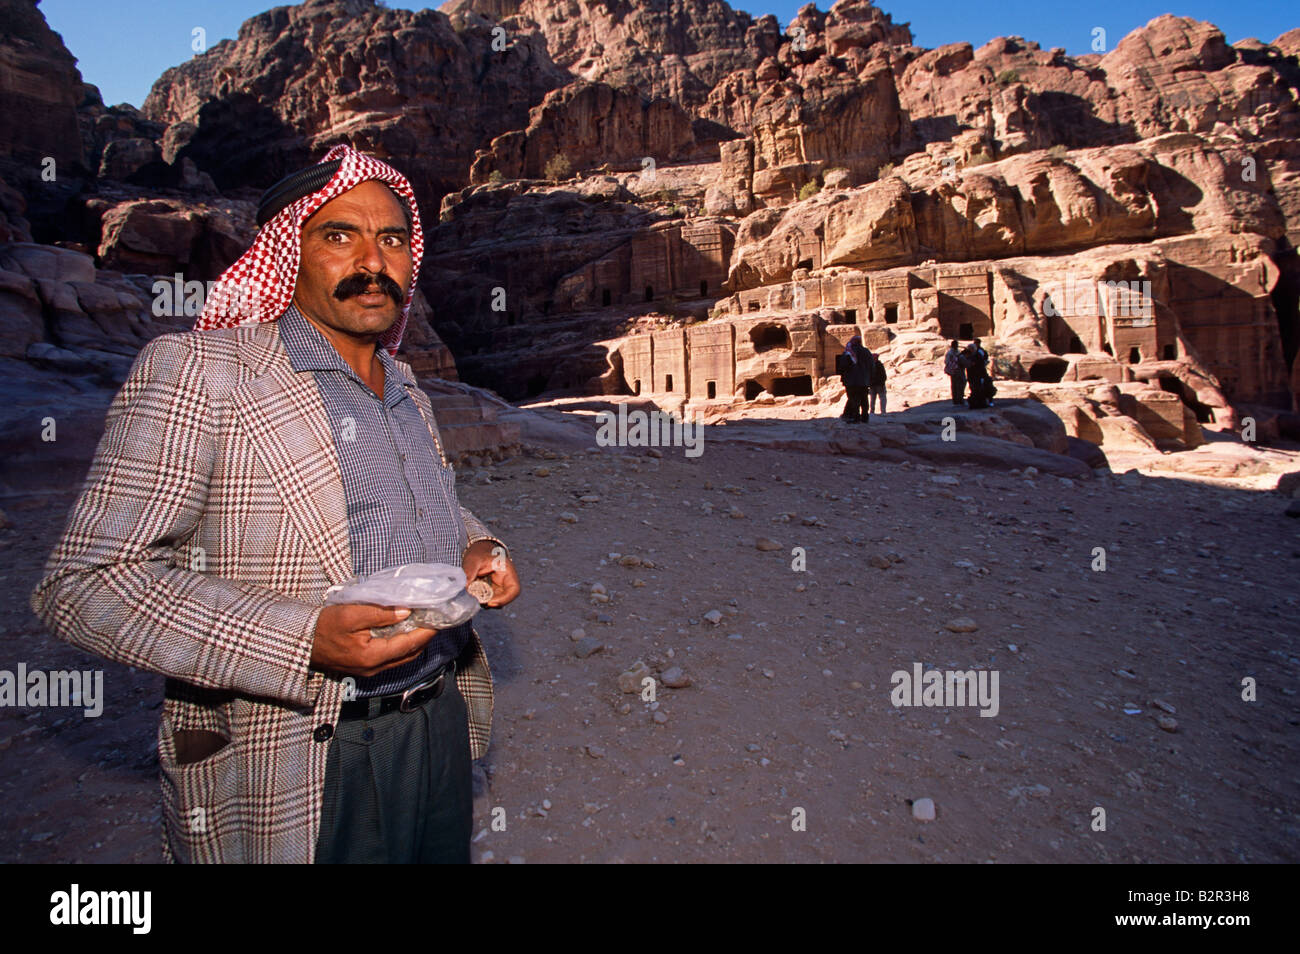 Turista masculino en el Acantilado de roca arenisca edificios tallados, Petra, Jordania, Oriente Medio Foto de stock